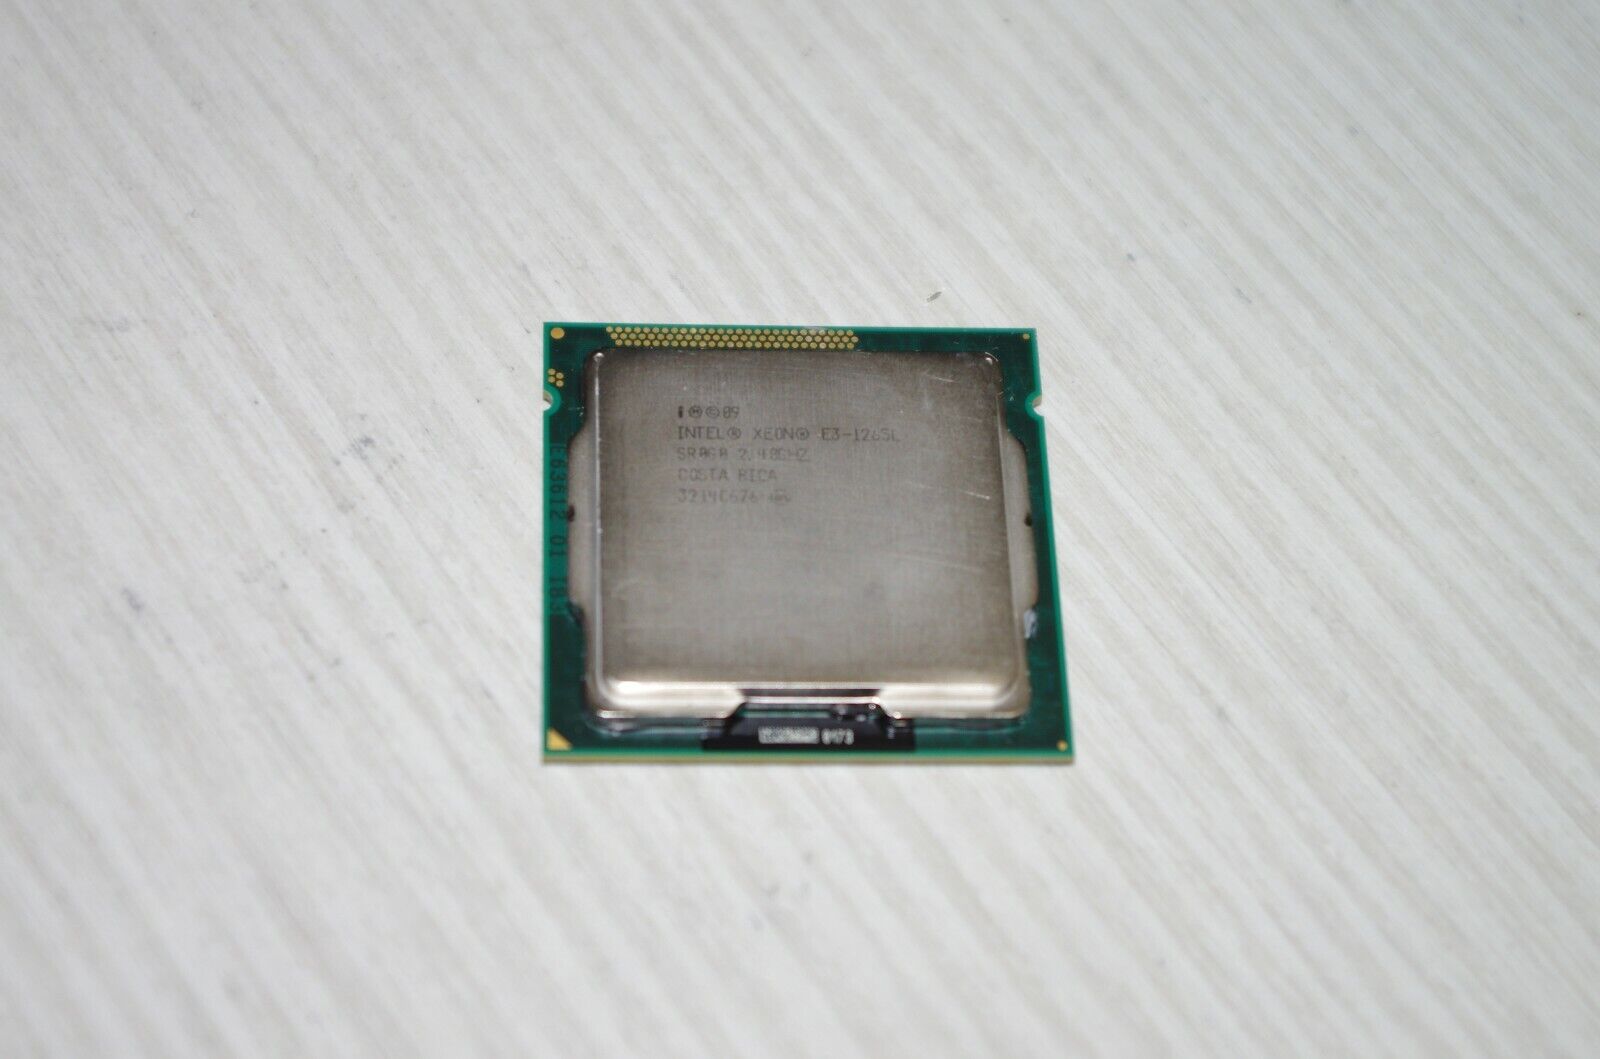 Intel Xeon E3-1265L CPU Quad-Core 2.4GHz 8M SR0G0 LGA1155 Processor USA Seller